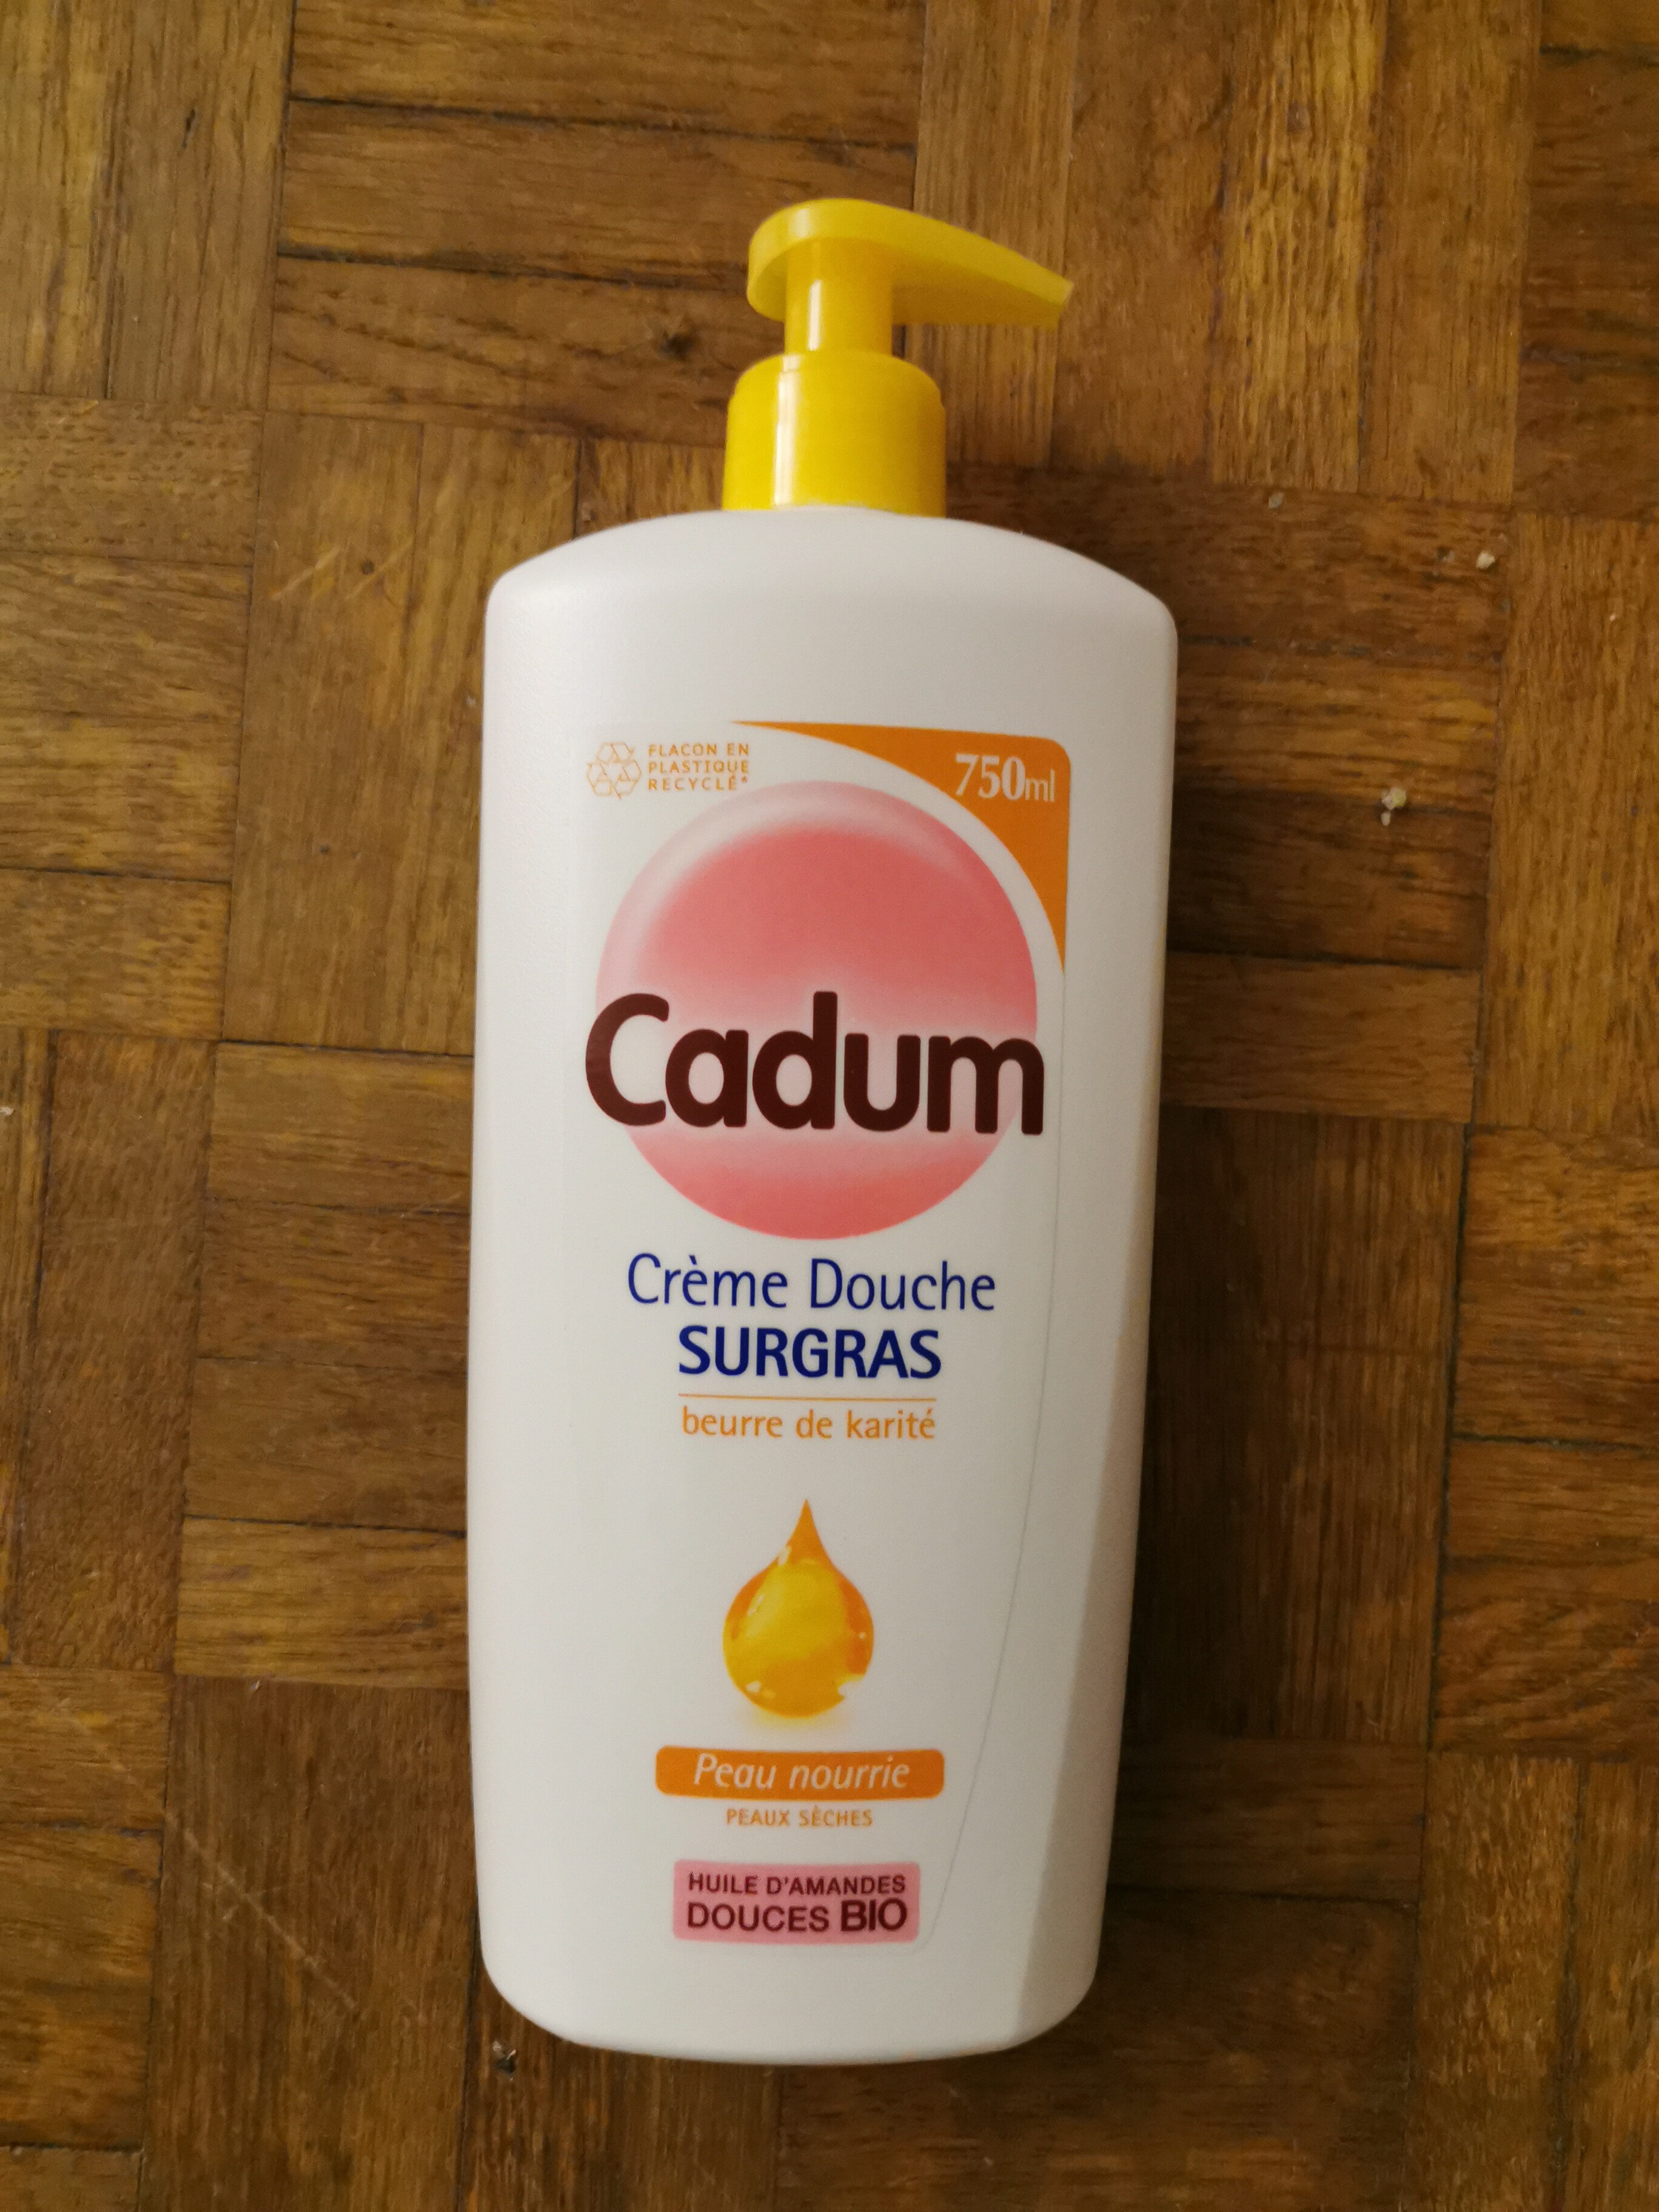 cadum crème douche sugras - Produkt - fr